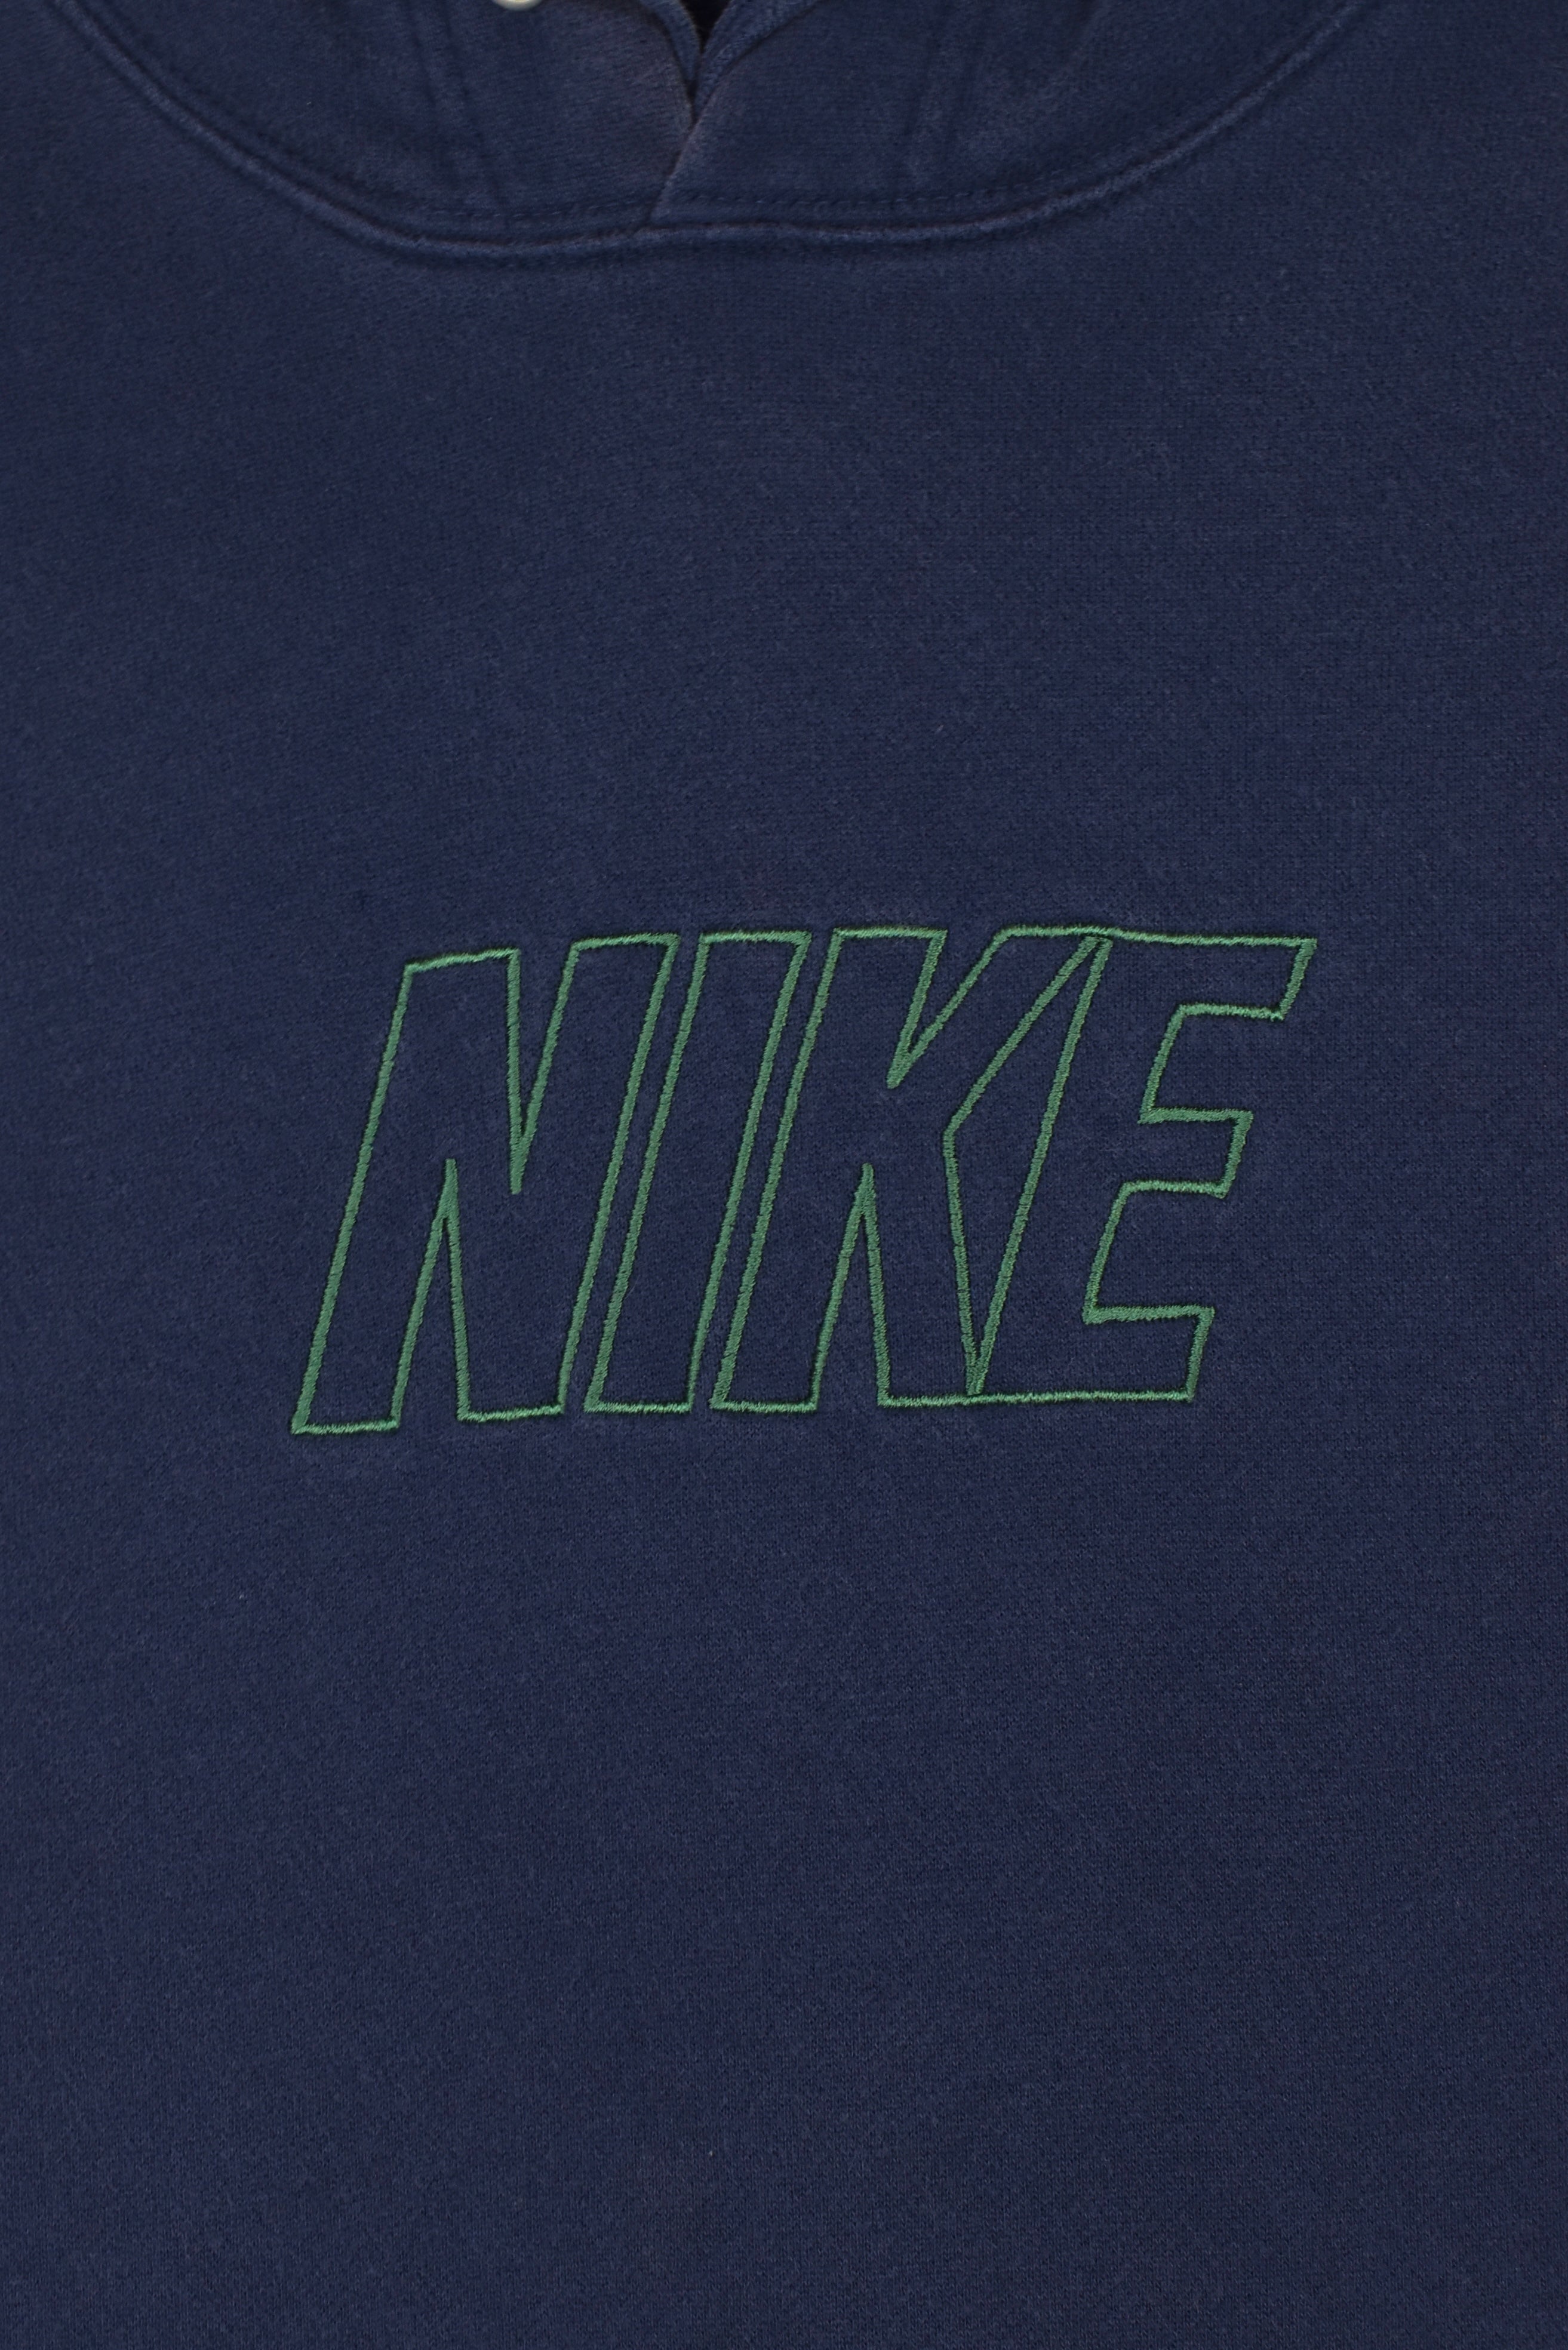 Vintage Nike hoodie, navy embroidered sweatshirt - Large